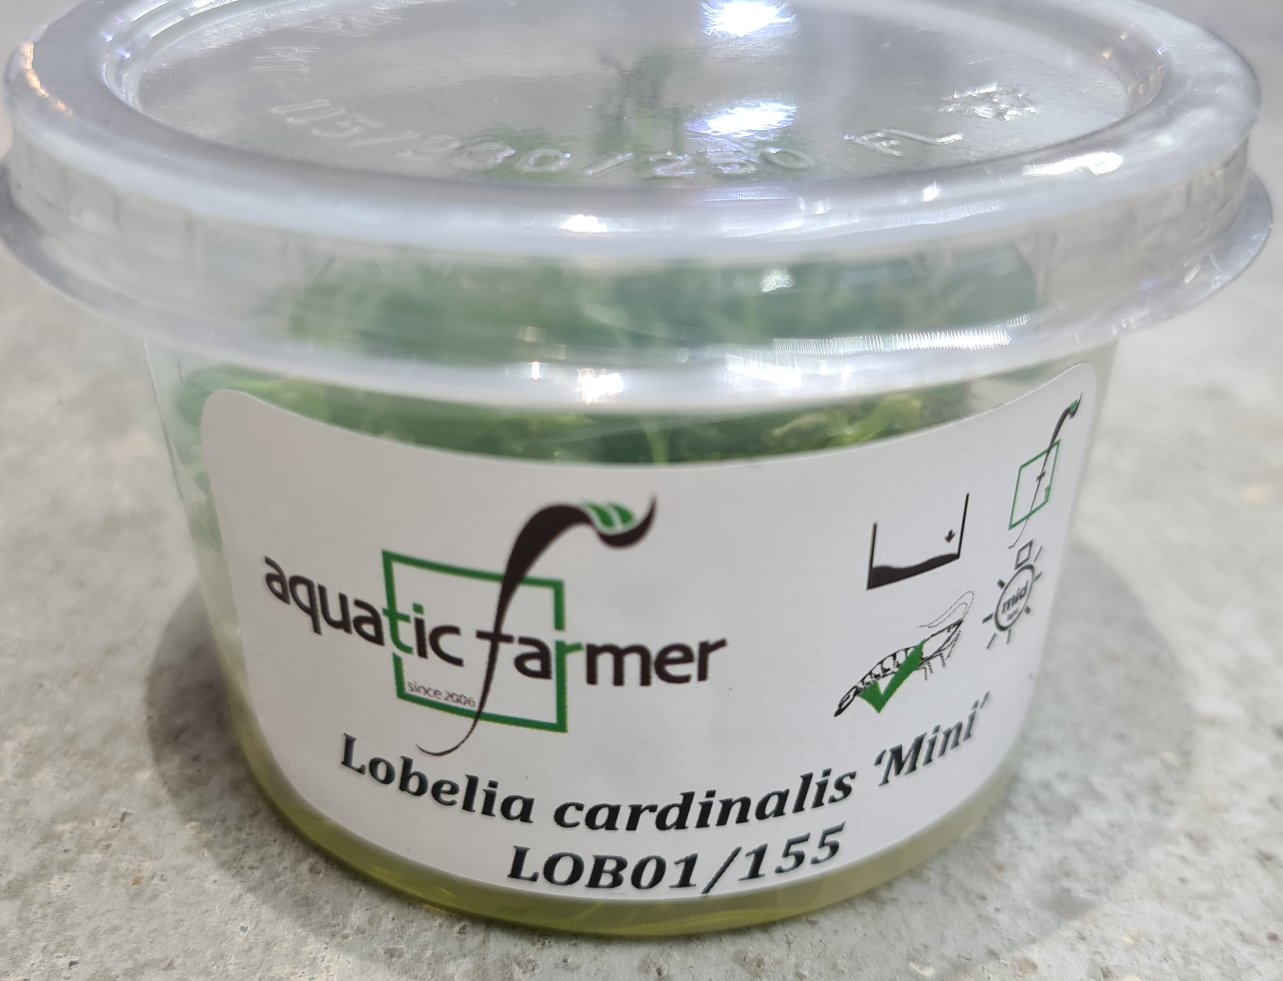 Aquatic Farmer - Lobelia Cardinalis 'Mini'